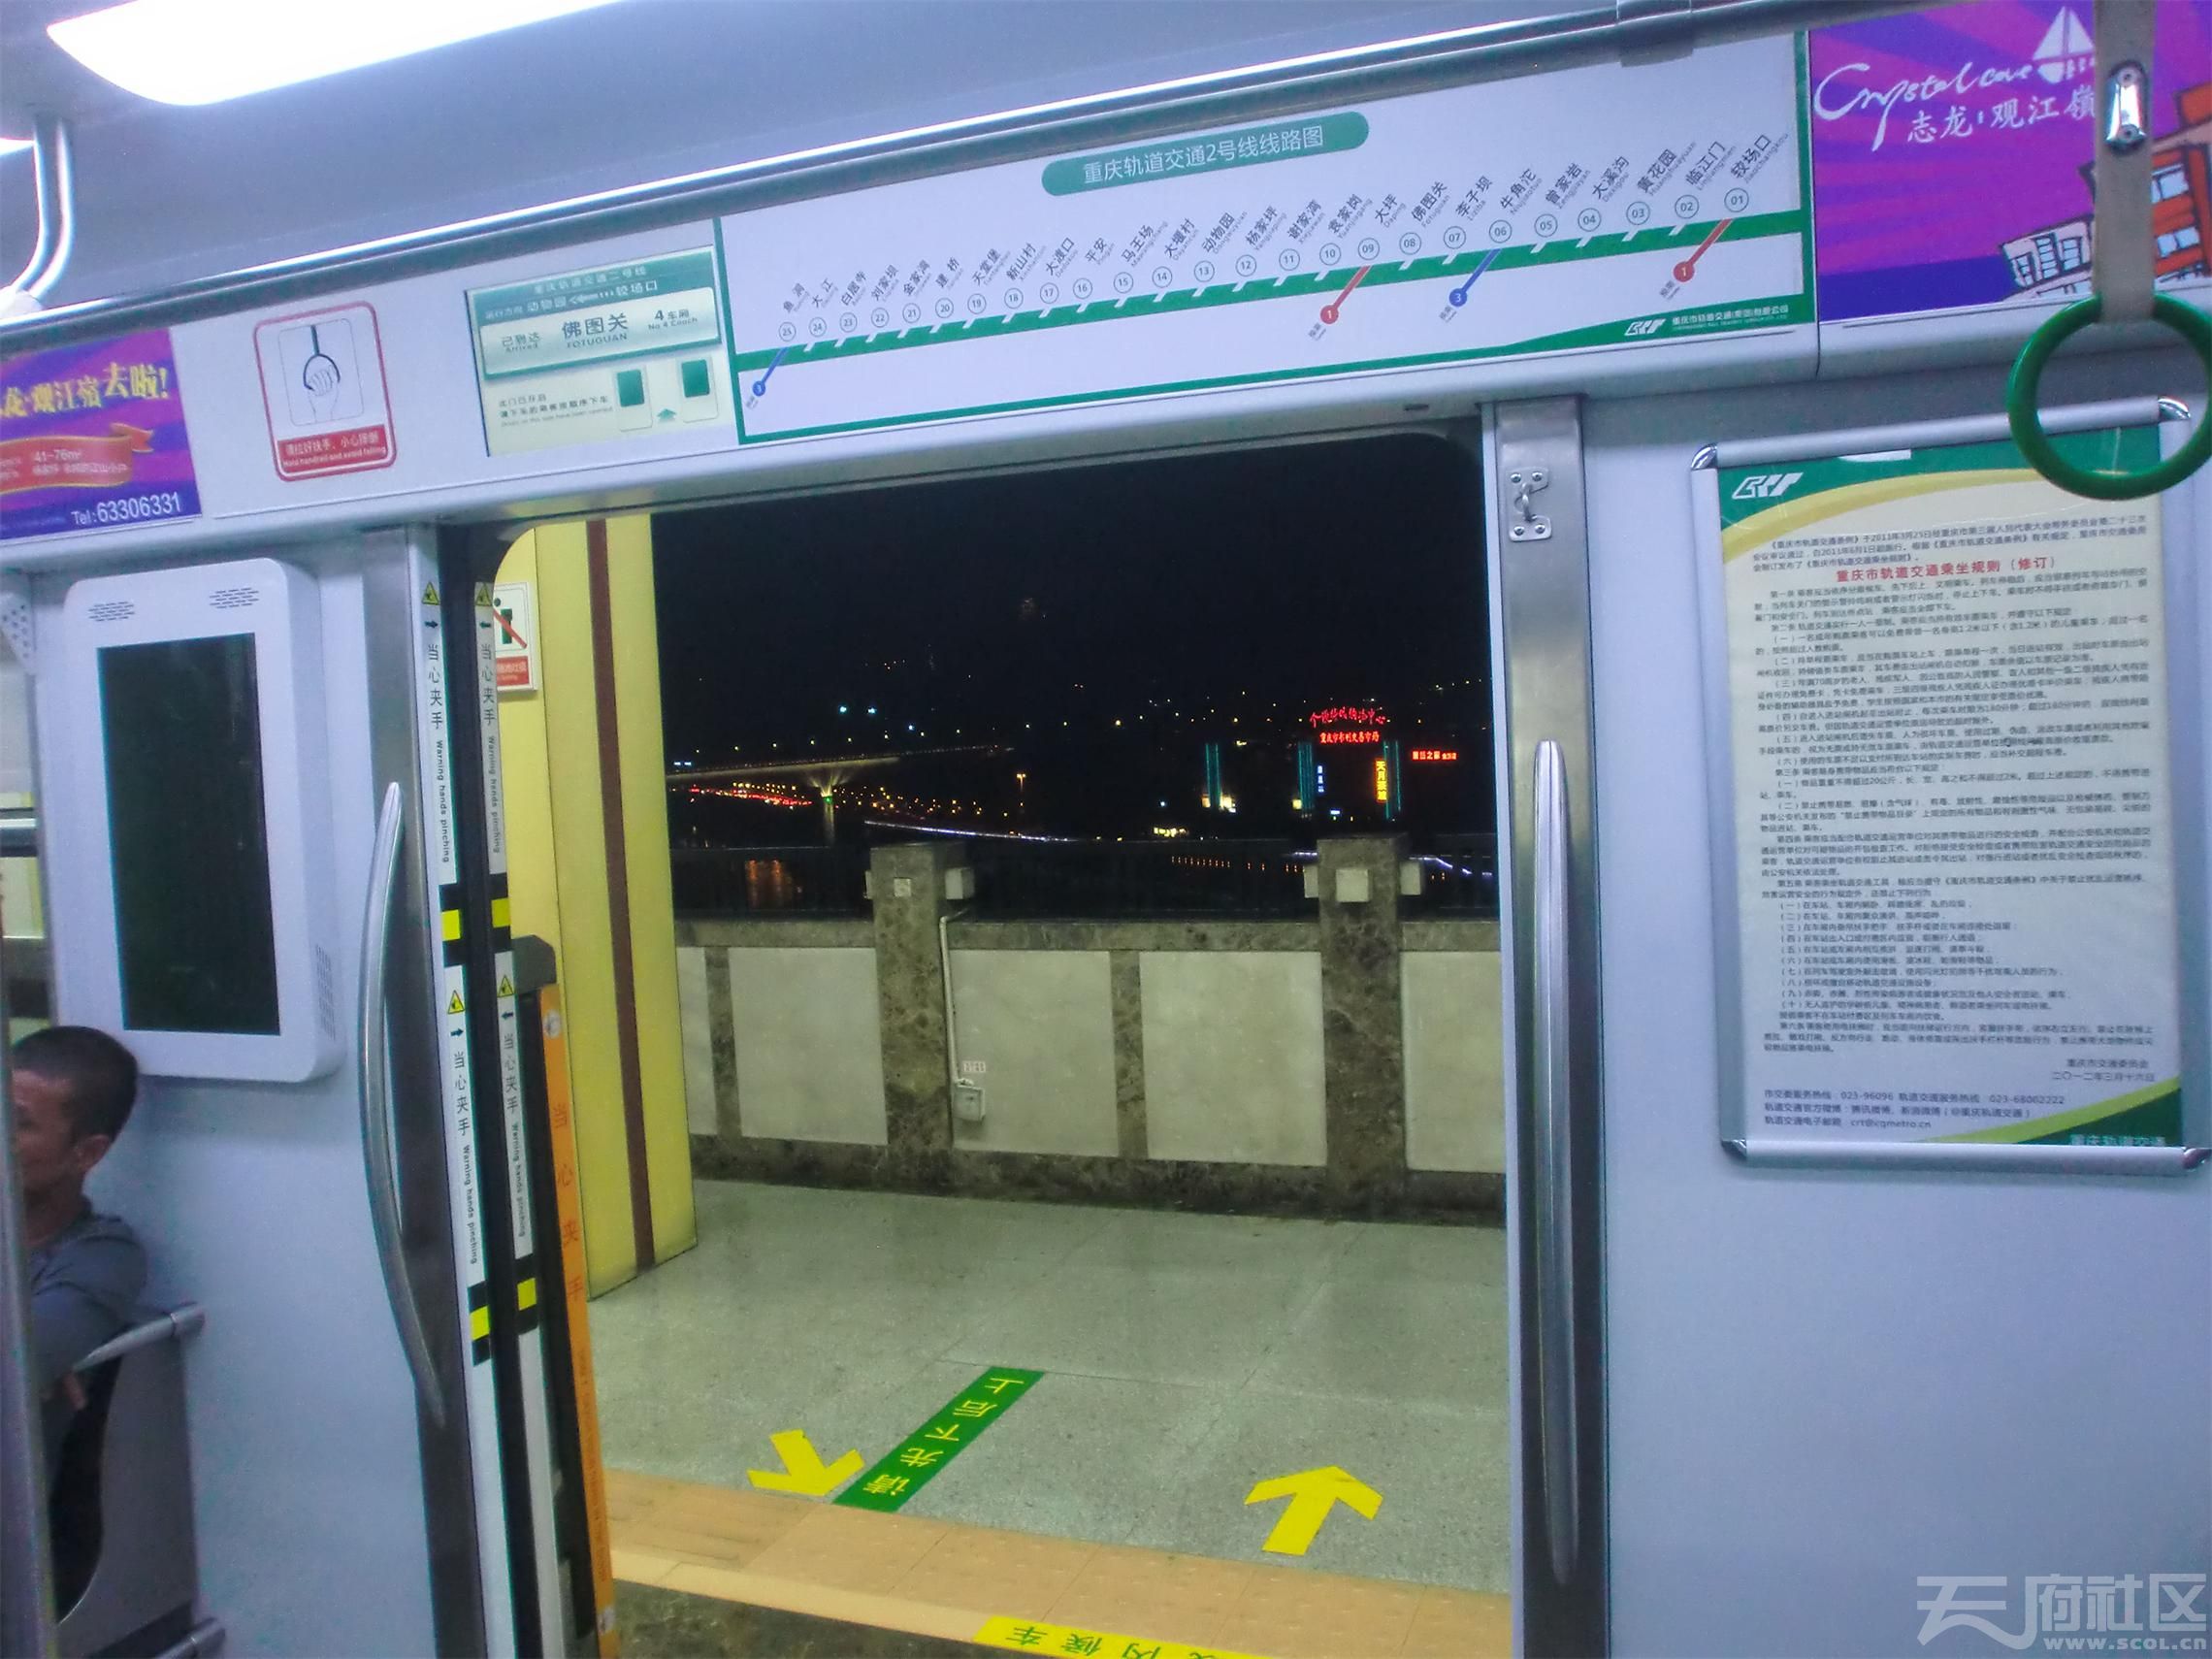 乘坐 重庆轨道交通2号线 夜间车( 新图 22张,随便看看)